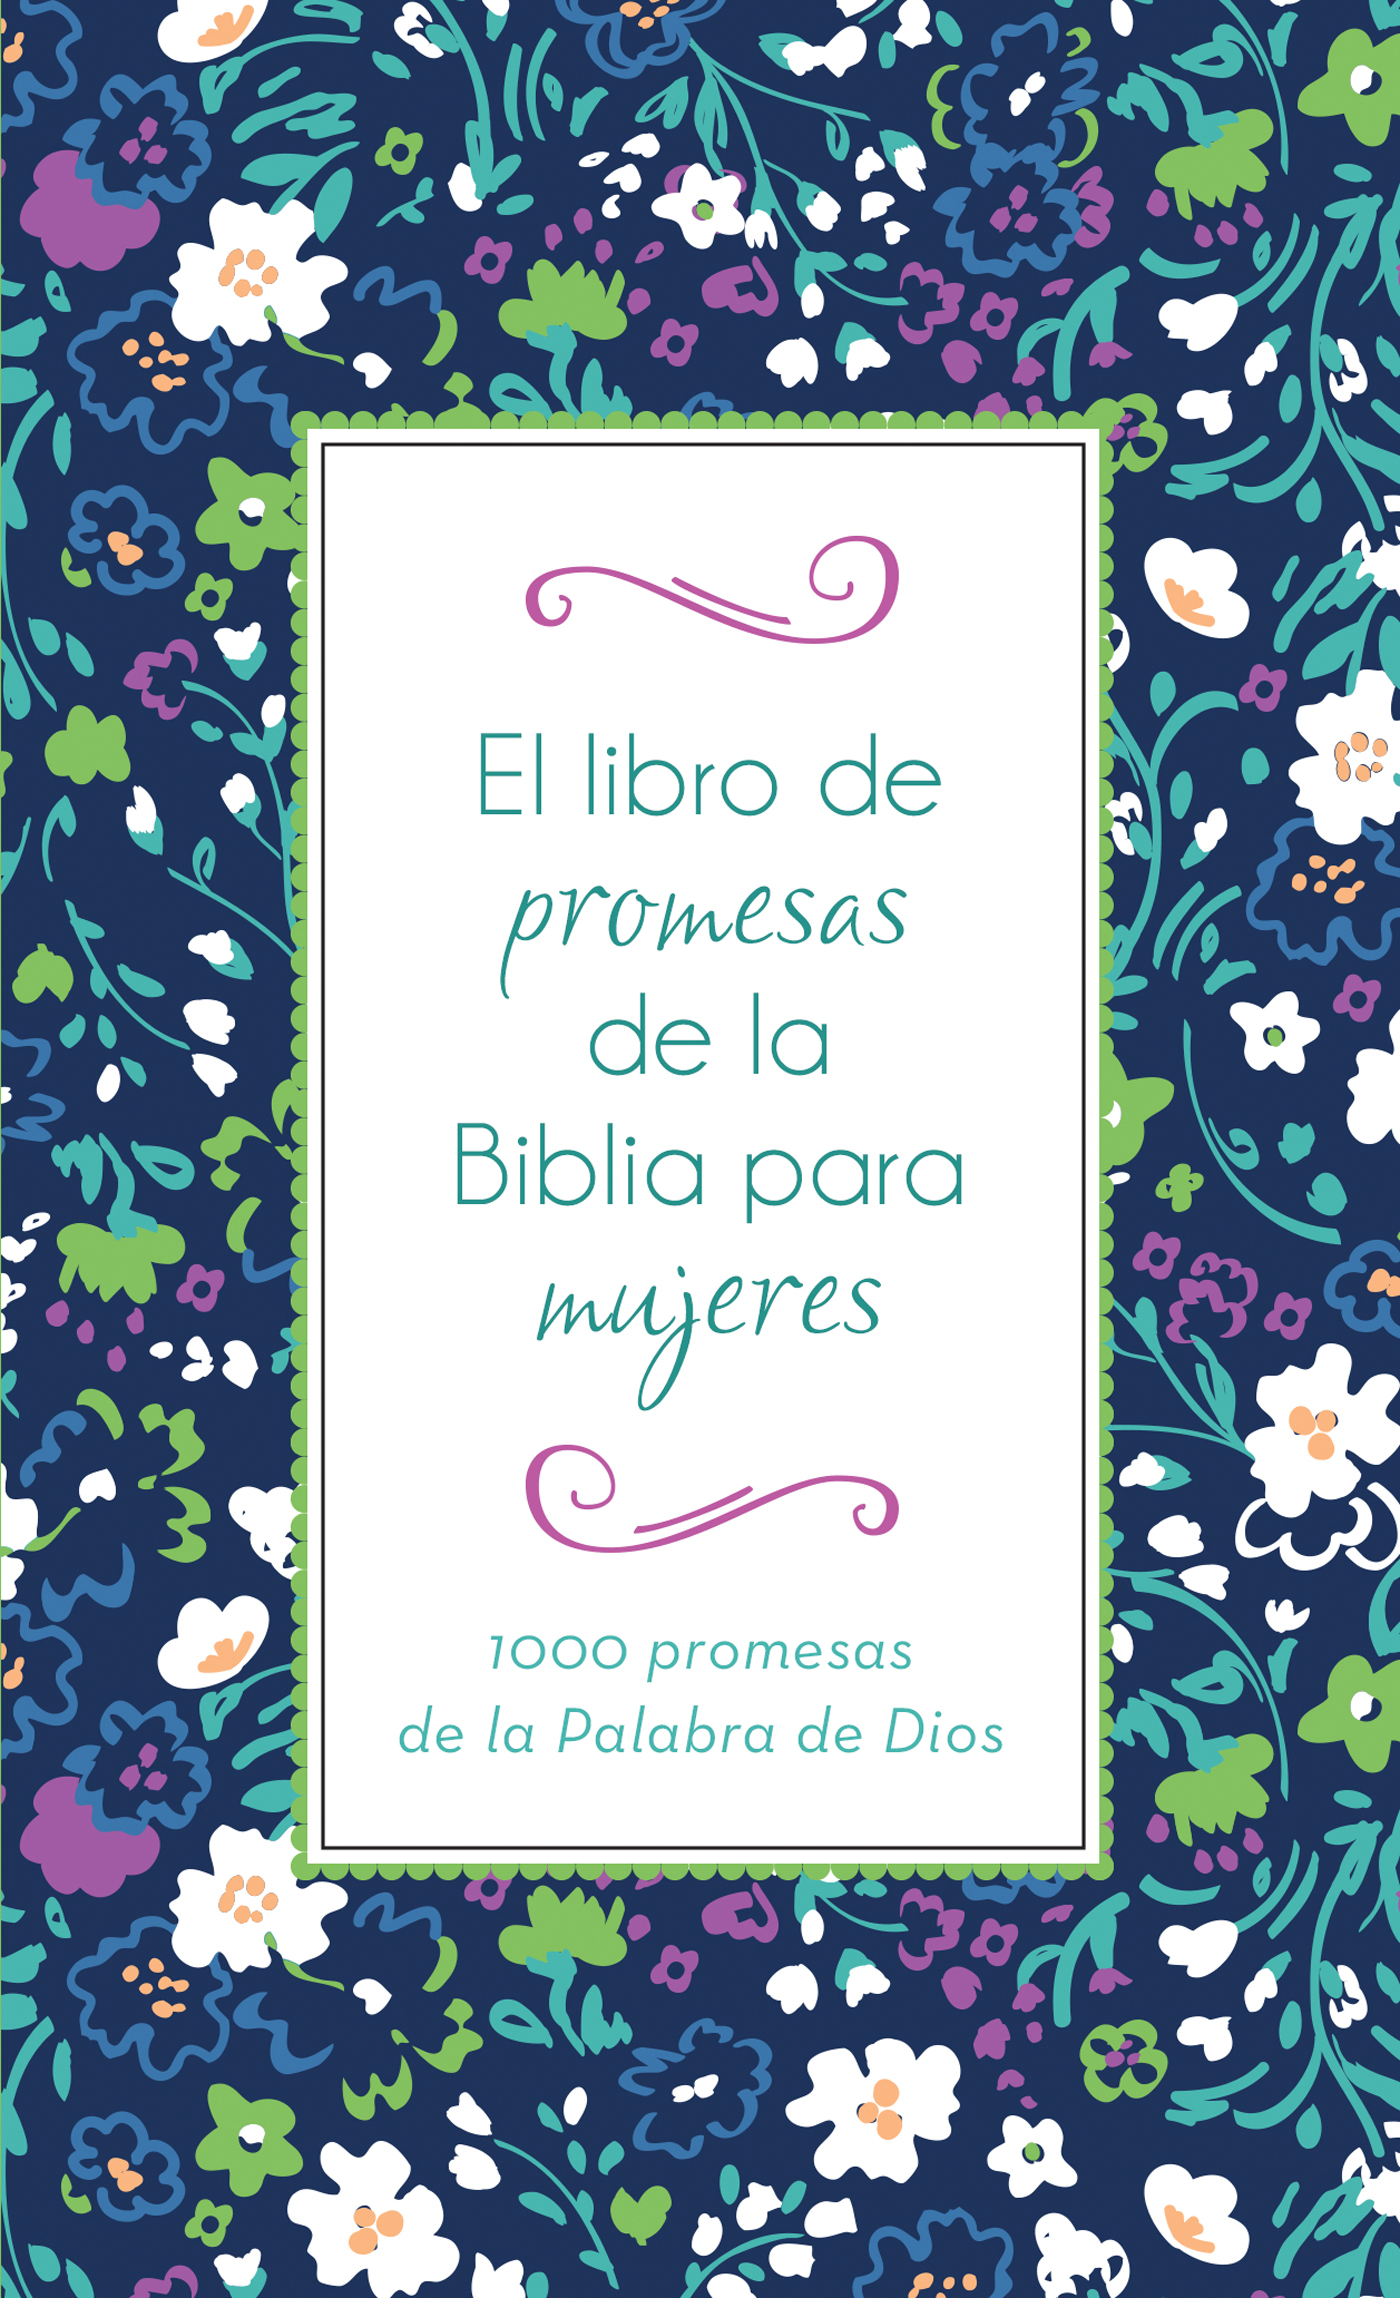 traqueteo Corte Anguila El libro de promesas de la Biblia para mujeres